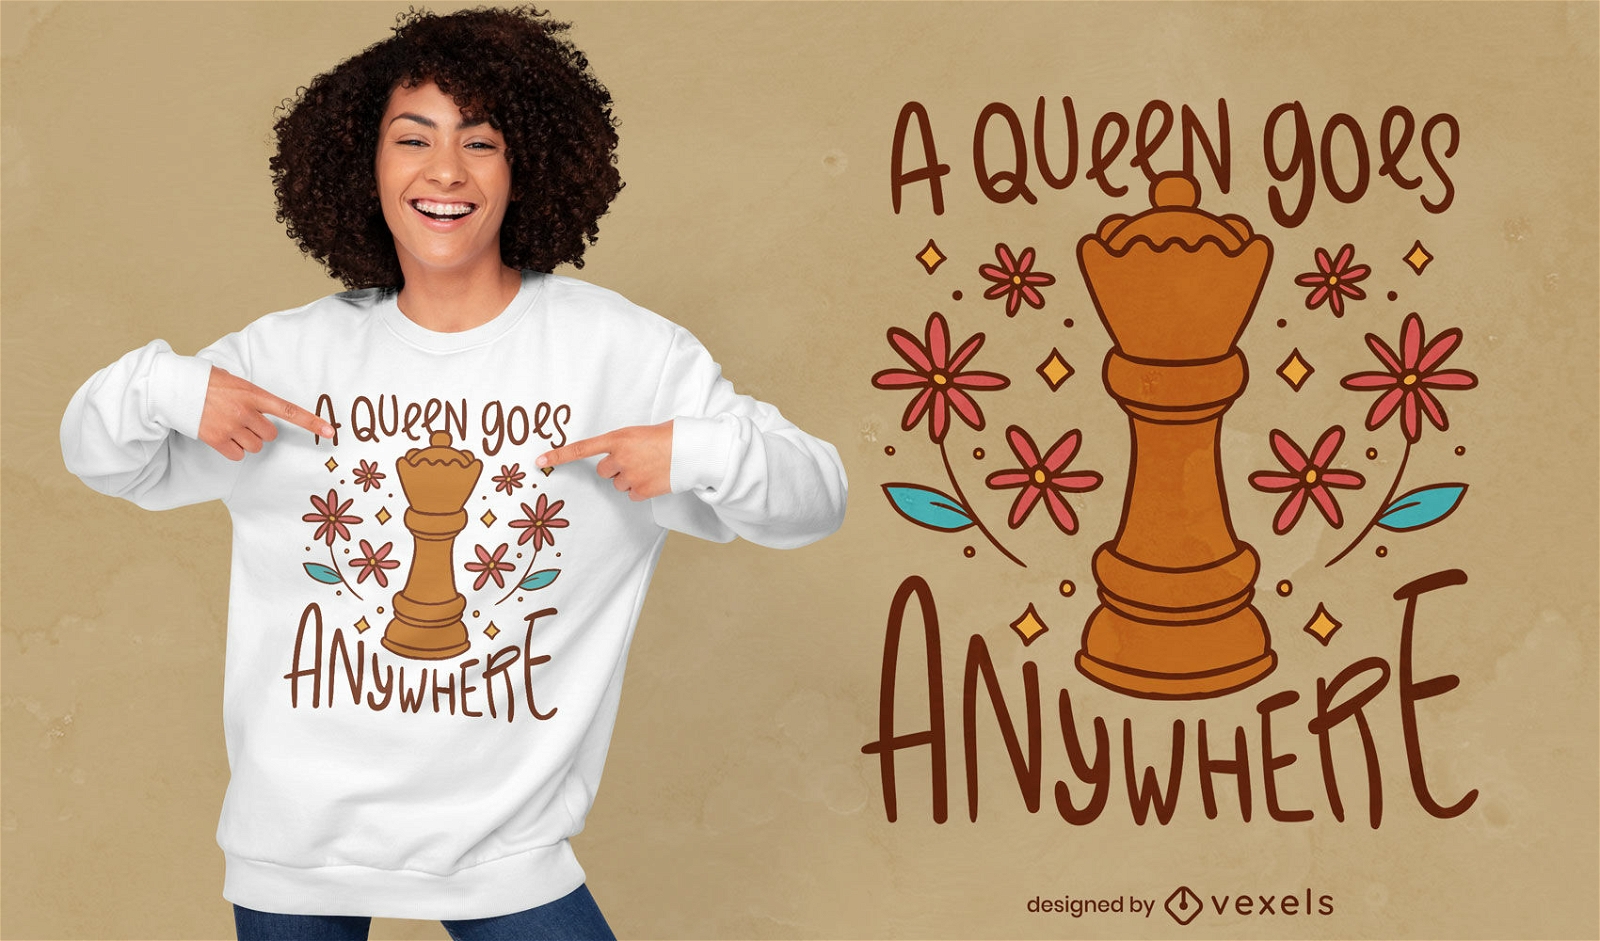 Divertido dise?o de camiseta de reina de ajedrez.